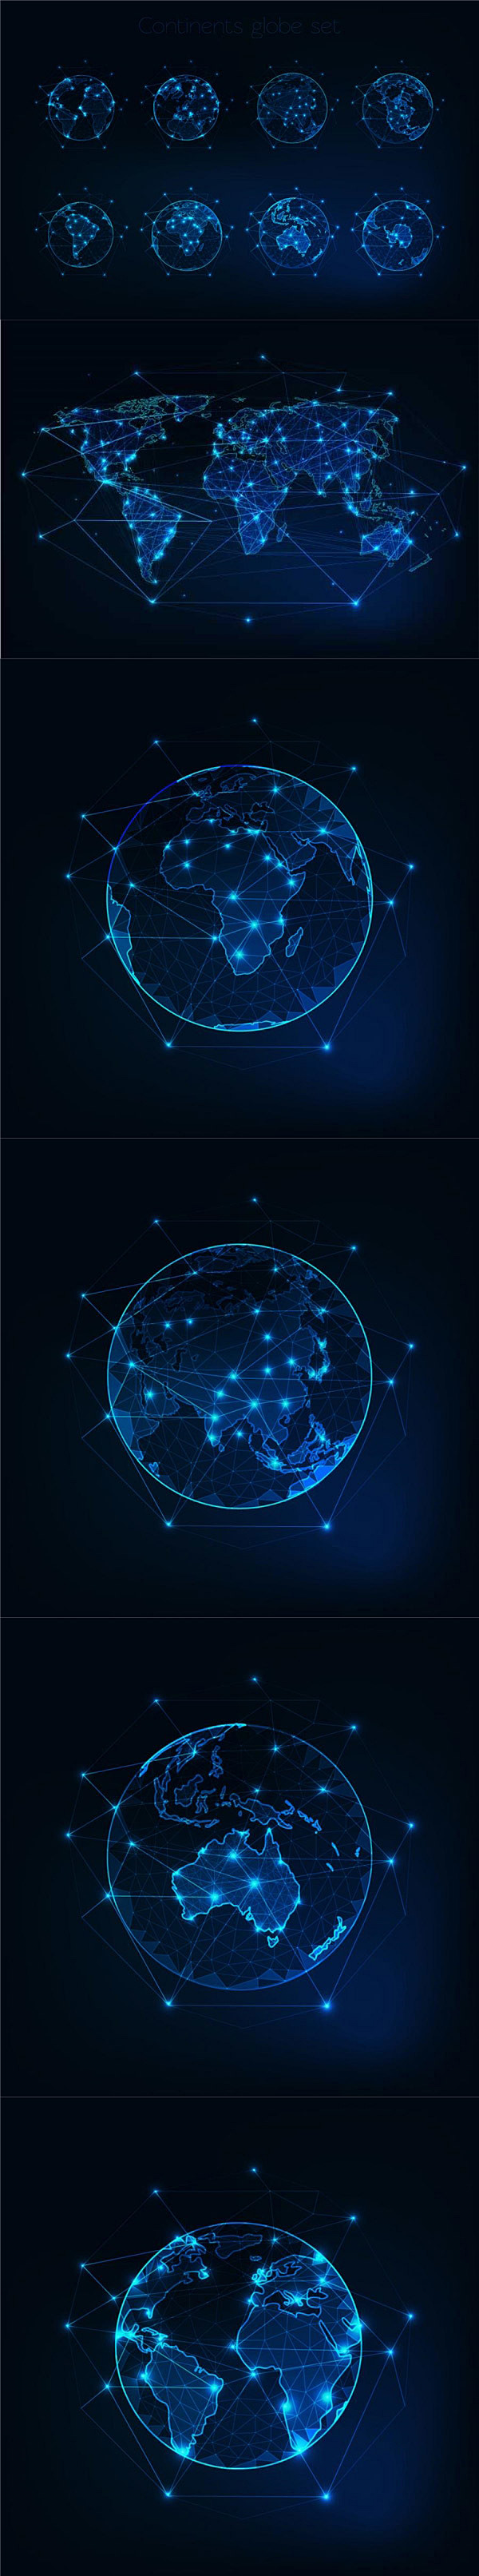 科技感地球网络图